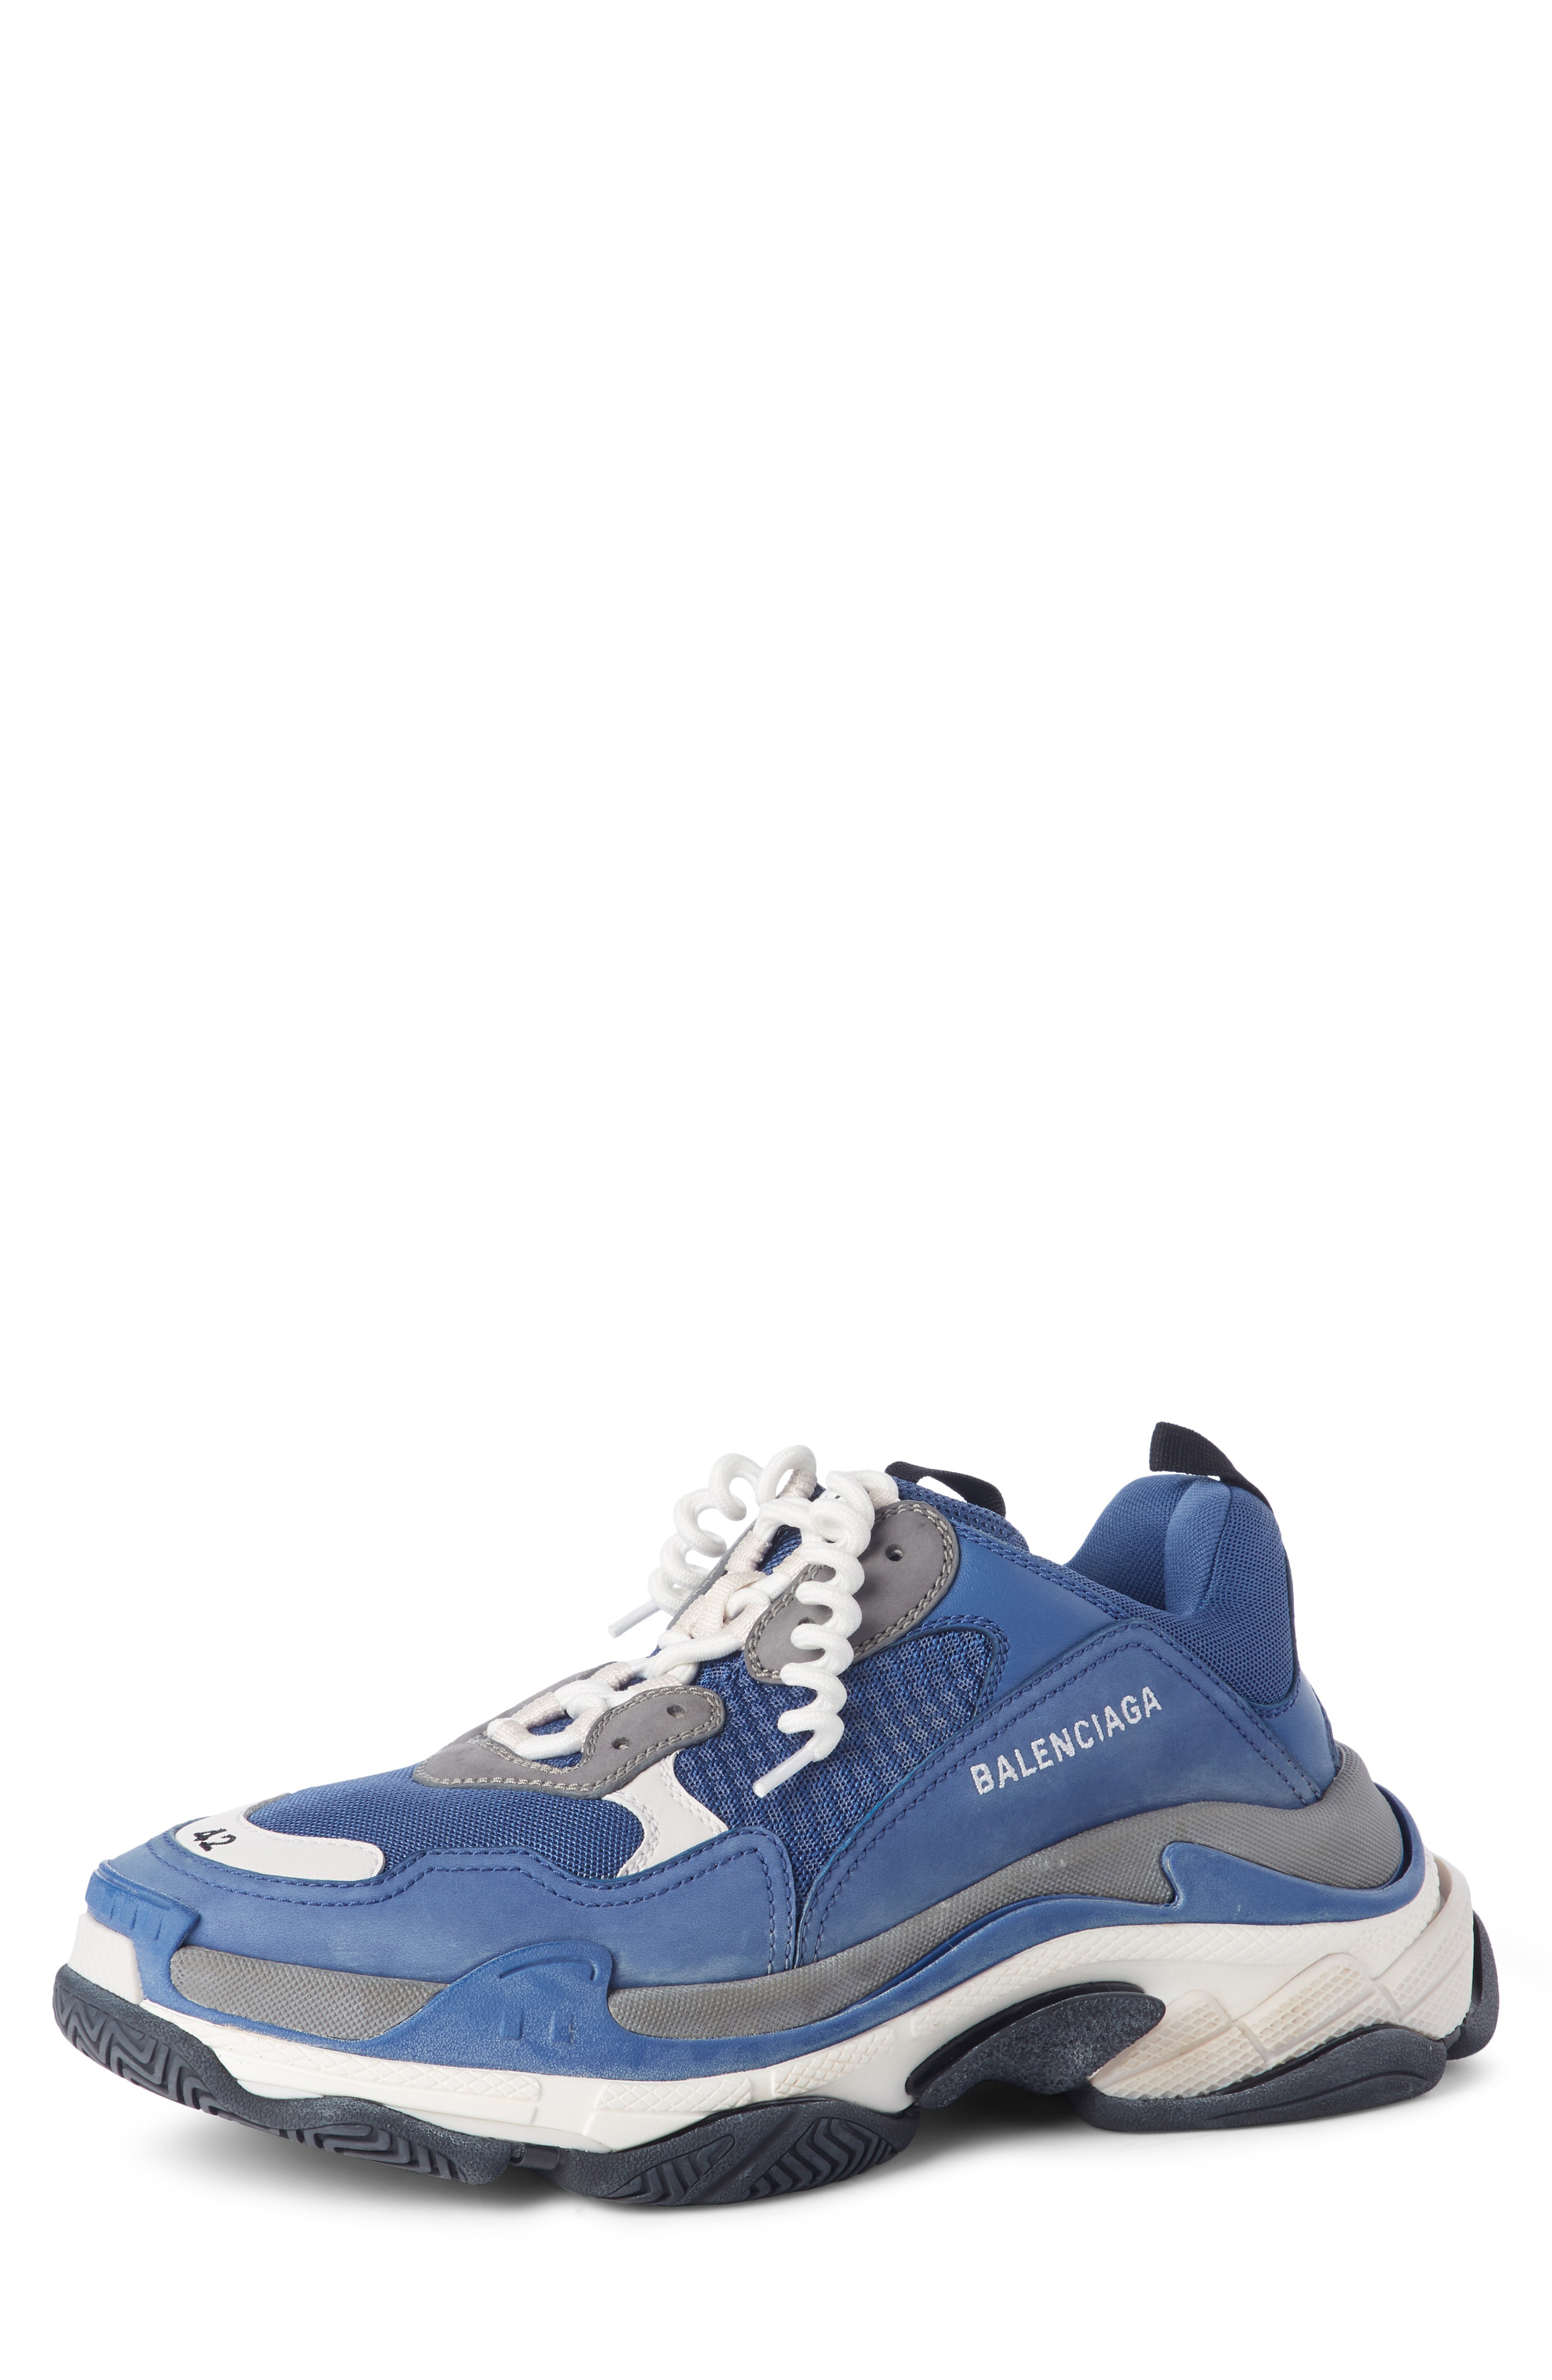 Balenciaga White Blue Triple S Sneakers SSENSE